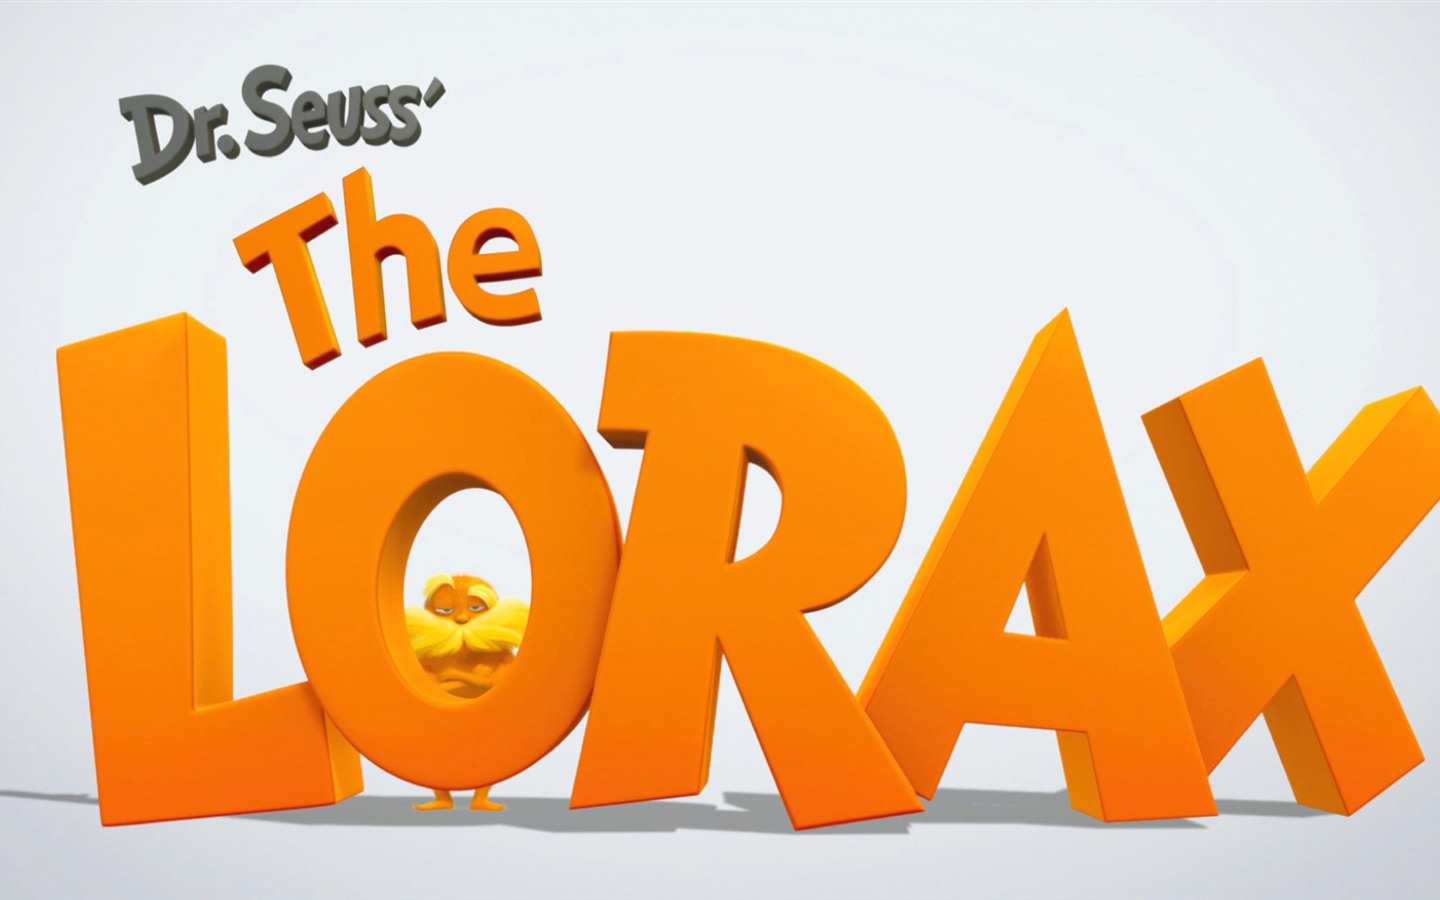 Dr. Seuss The Lorax 老雷斯的故事 高清壁纸1 - 1440x900